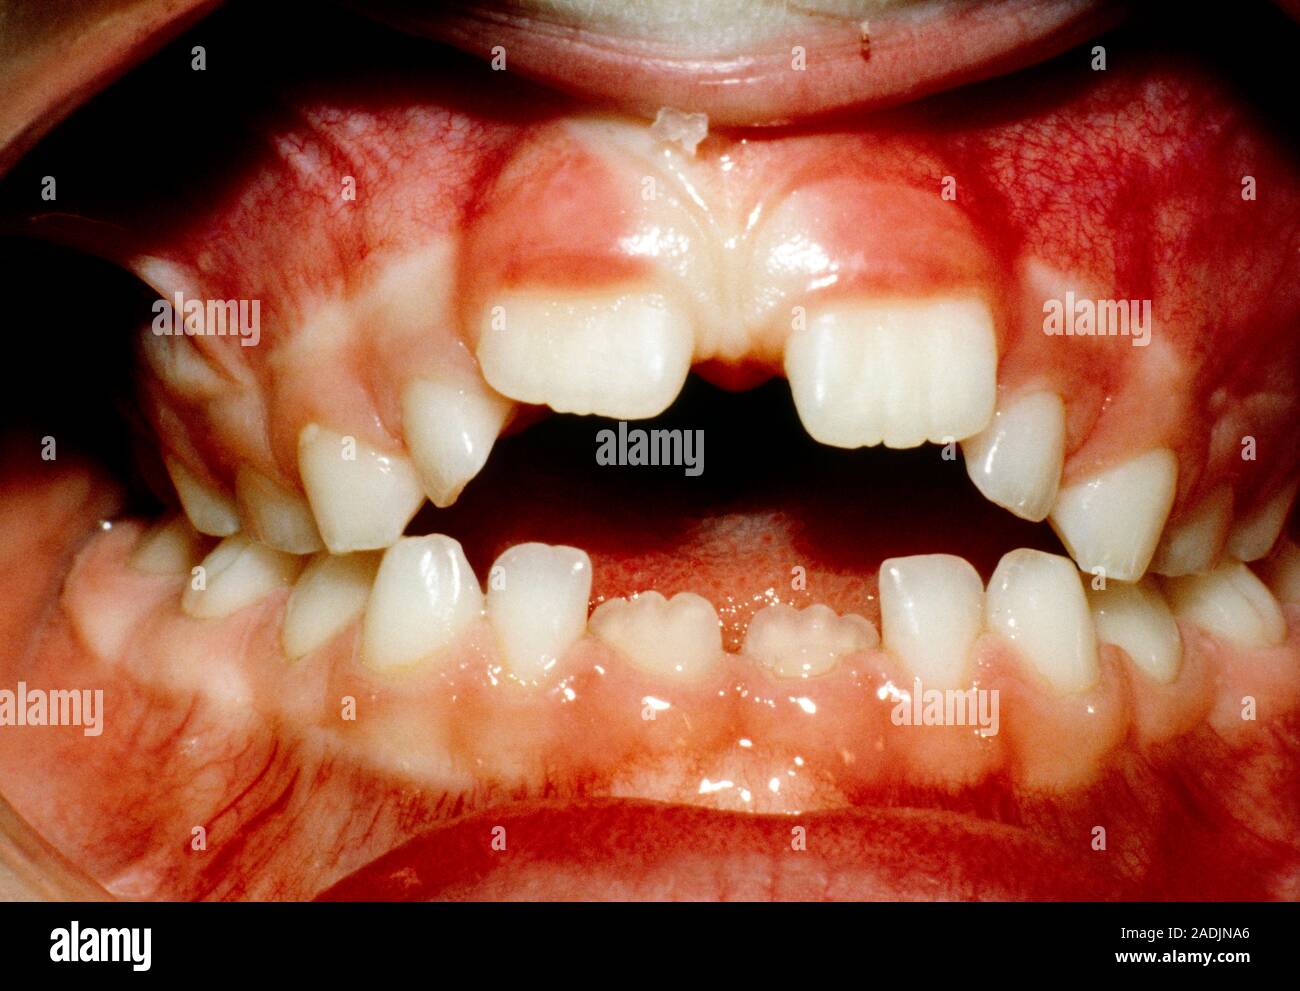 Cerca de la boca de una persona que muestre los efectos deformative de  chuparse el dedo sobre los dientes y las encías. Los 2 incisivos superiores  (centro) son particularmente aff Fotografía de